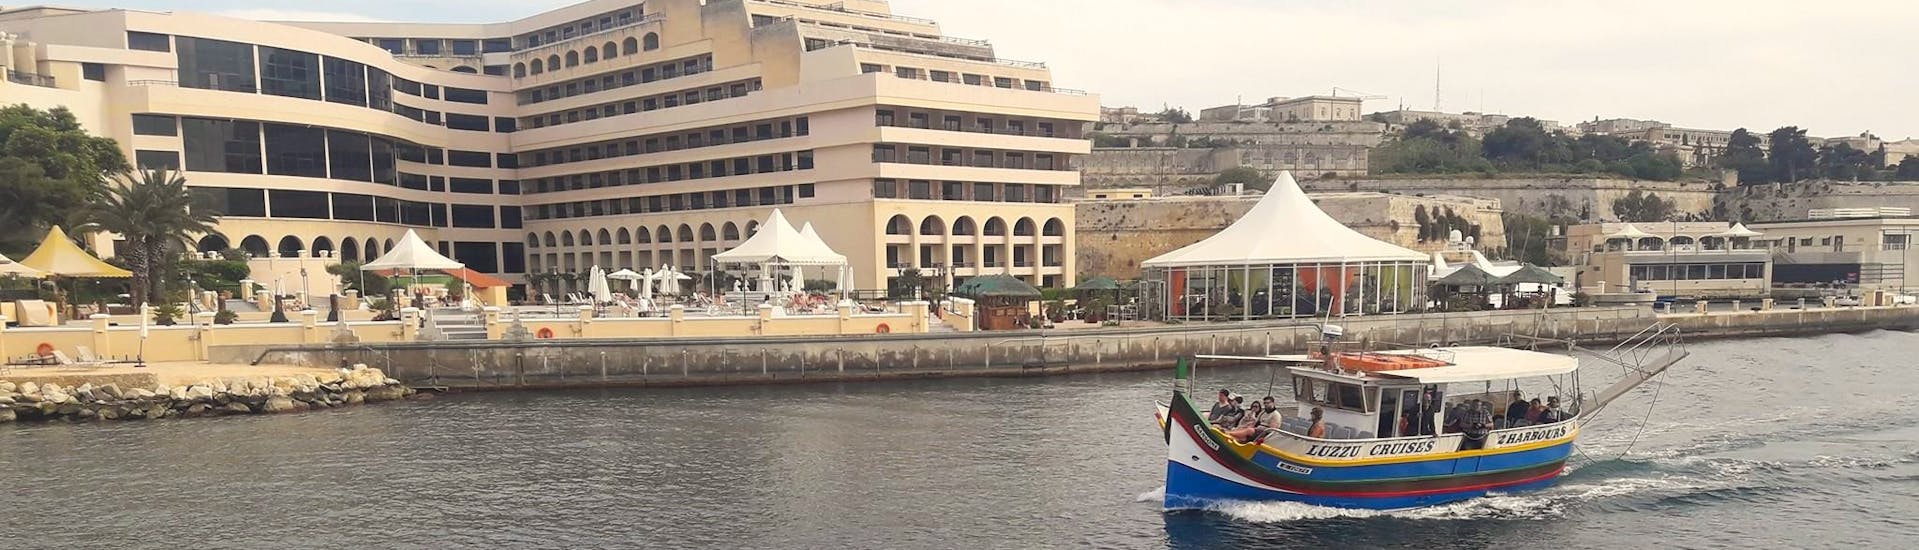 I porti che visiterete durante il Giro in barca ai porti di La Valletta e Marsamxett con Luzzu Cruises Malta.